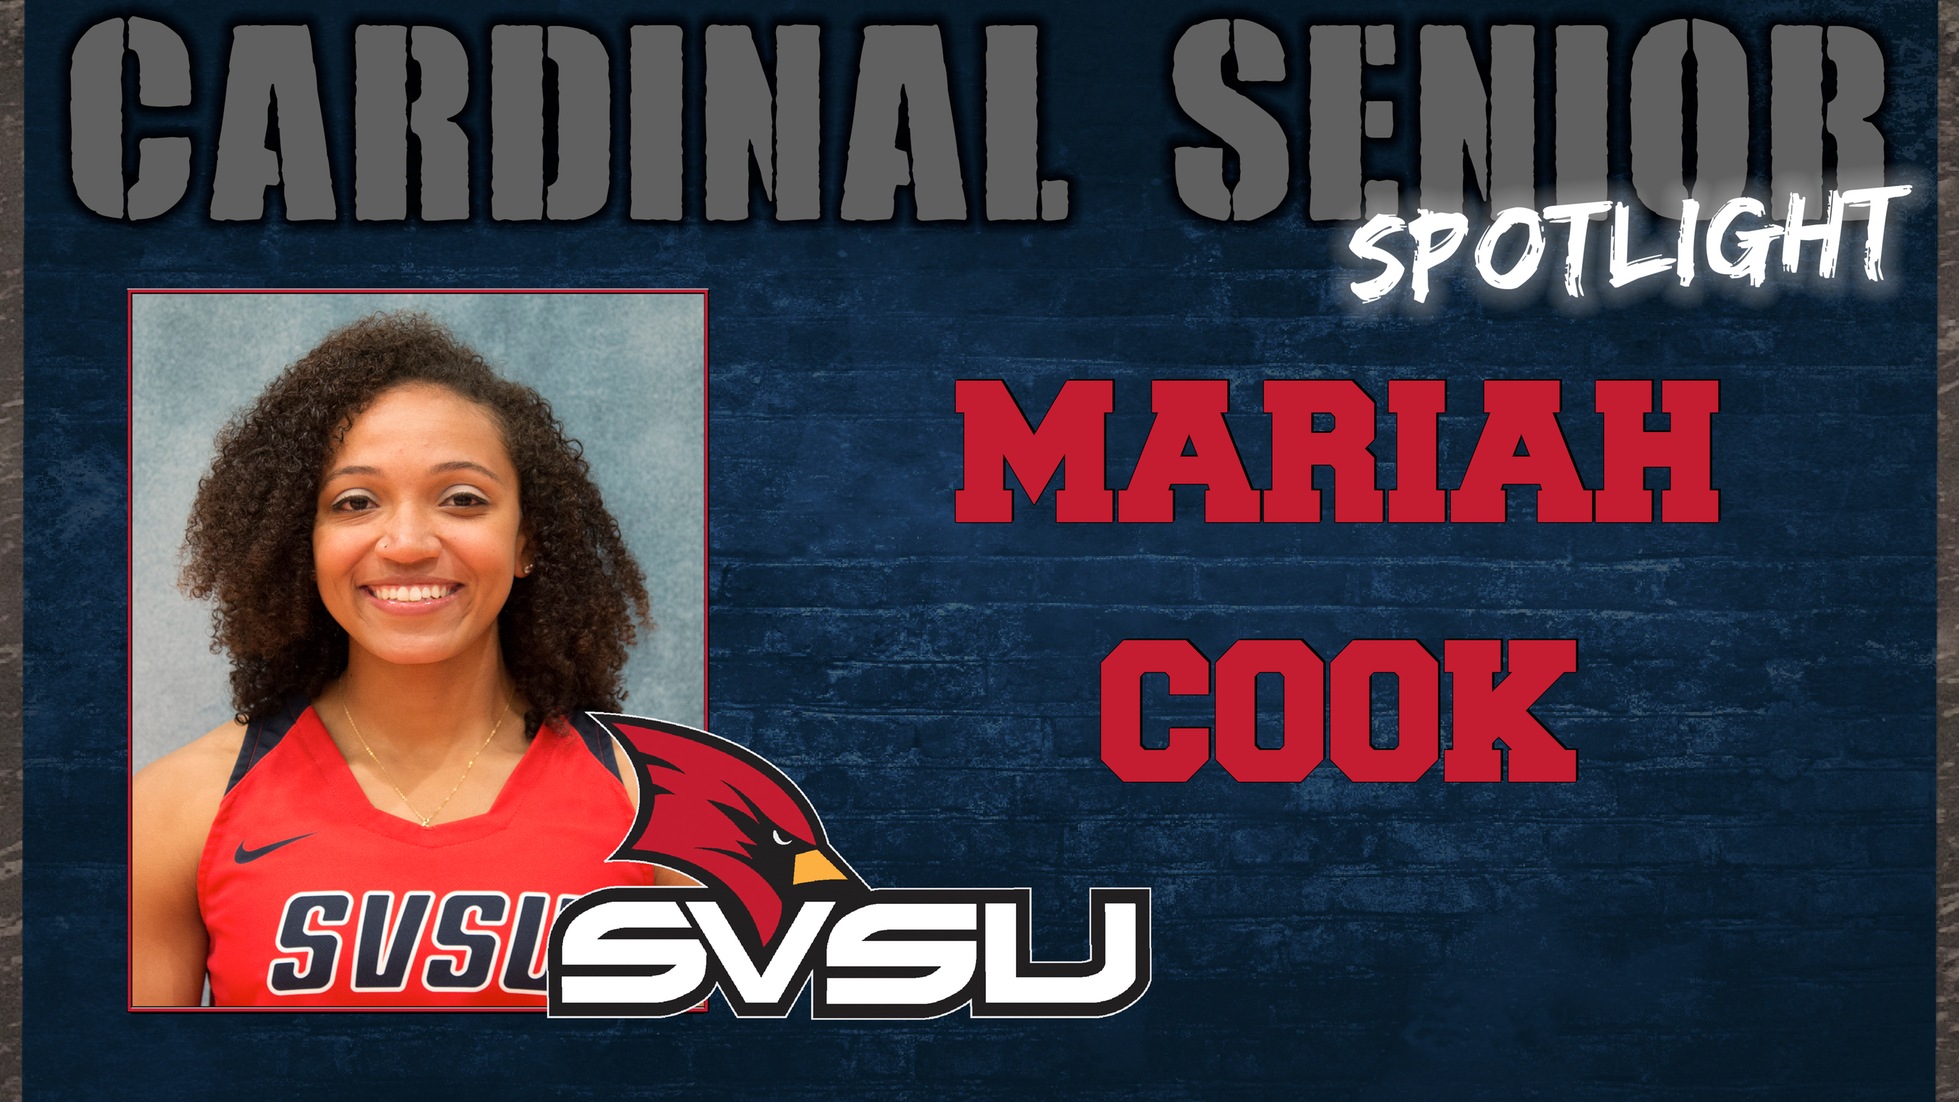 SVSU Cardinal Senior Spotlight - Mariah Cook